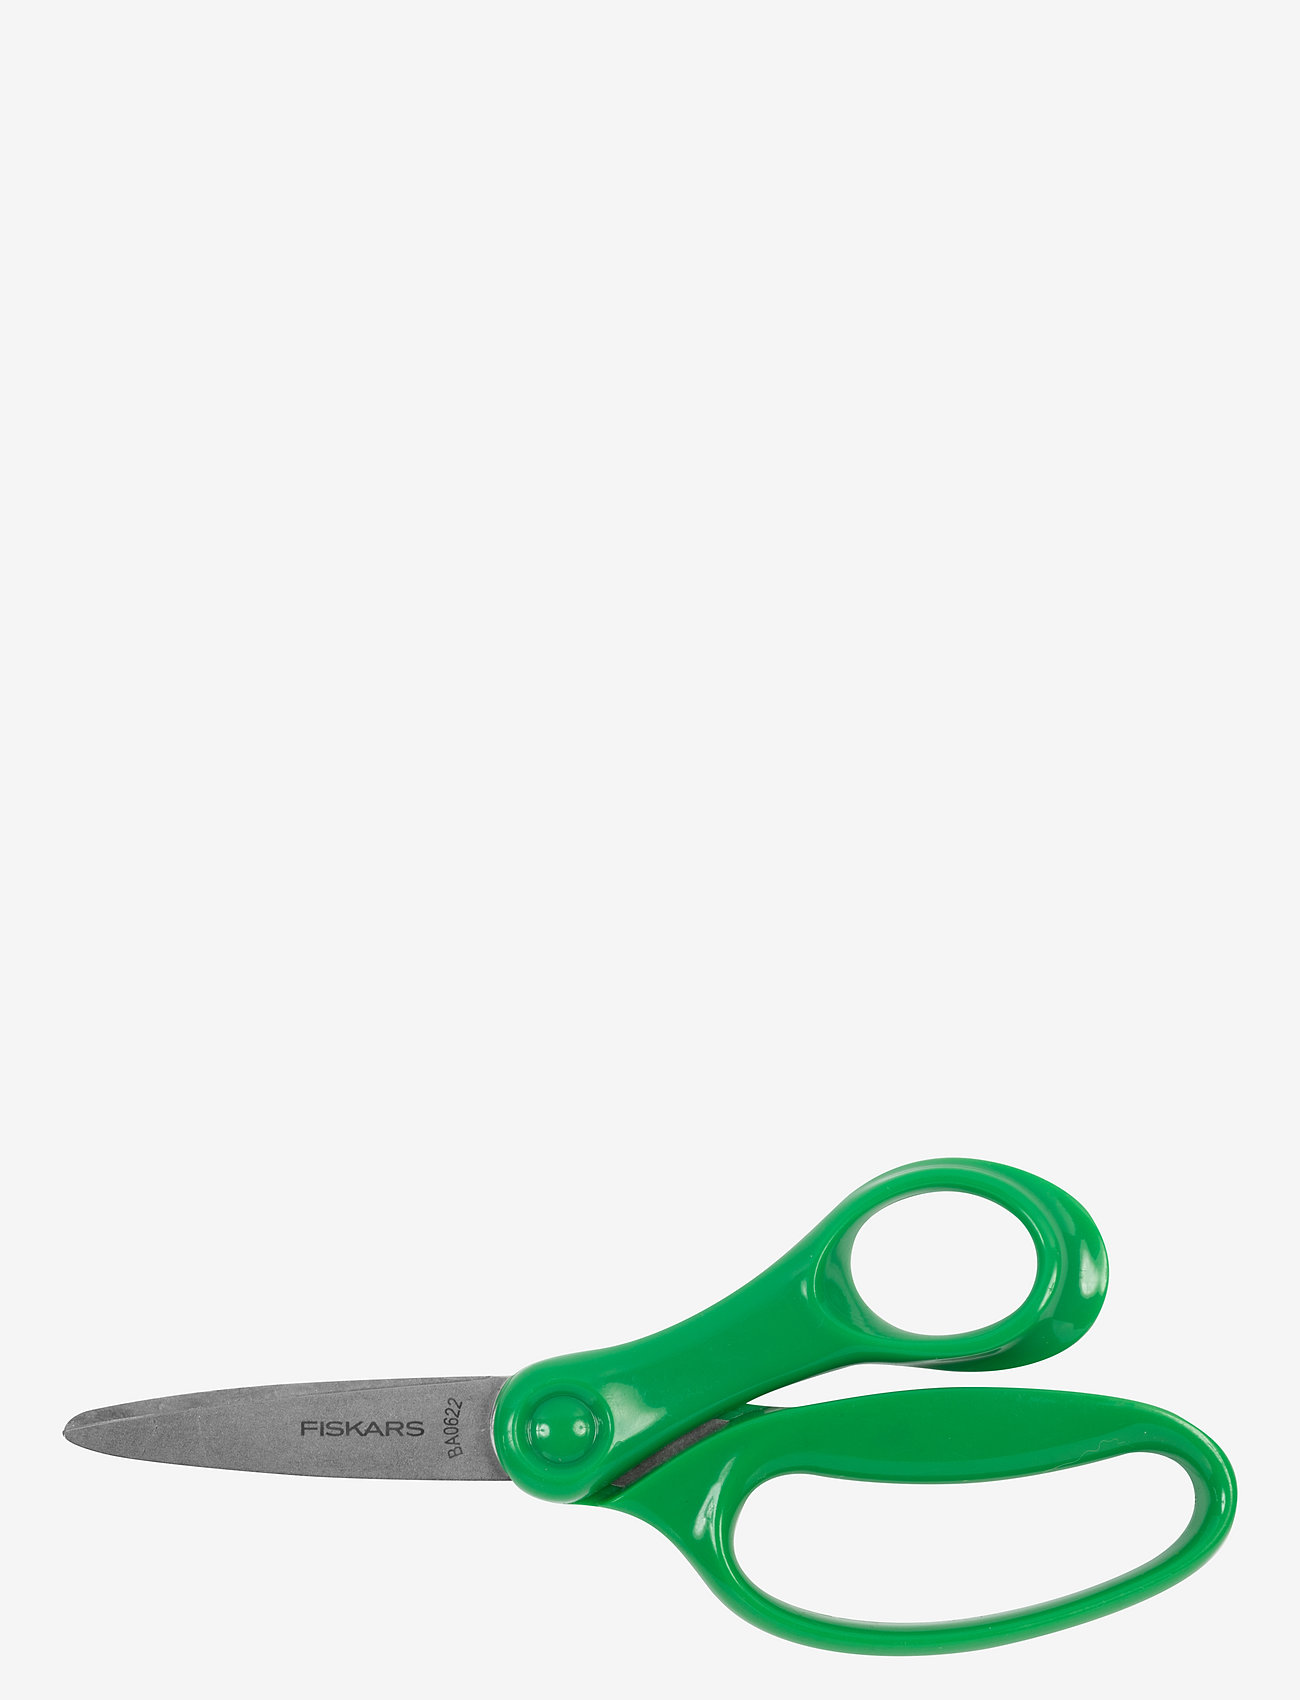 Fiskars - BIG KIDS Scissors 15cm  6/36 16L - lowest prices - green - 0